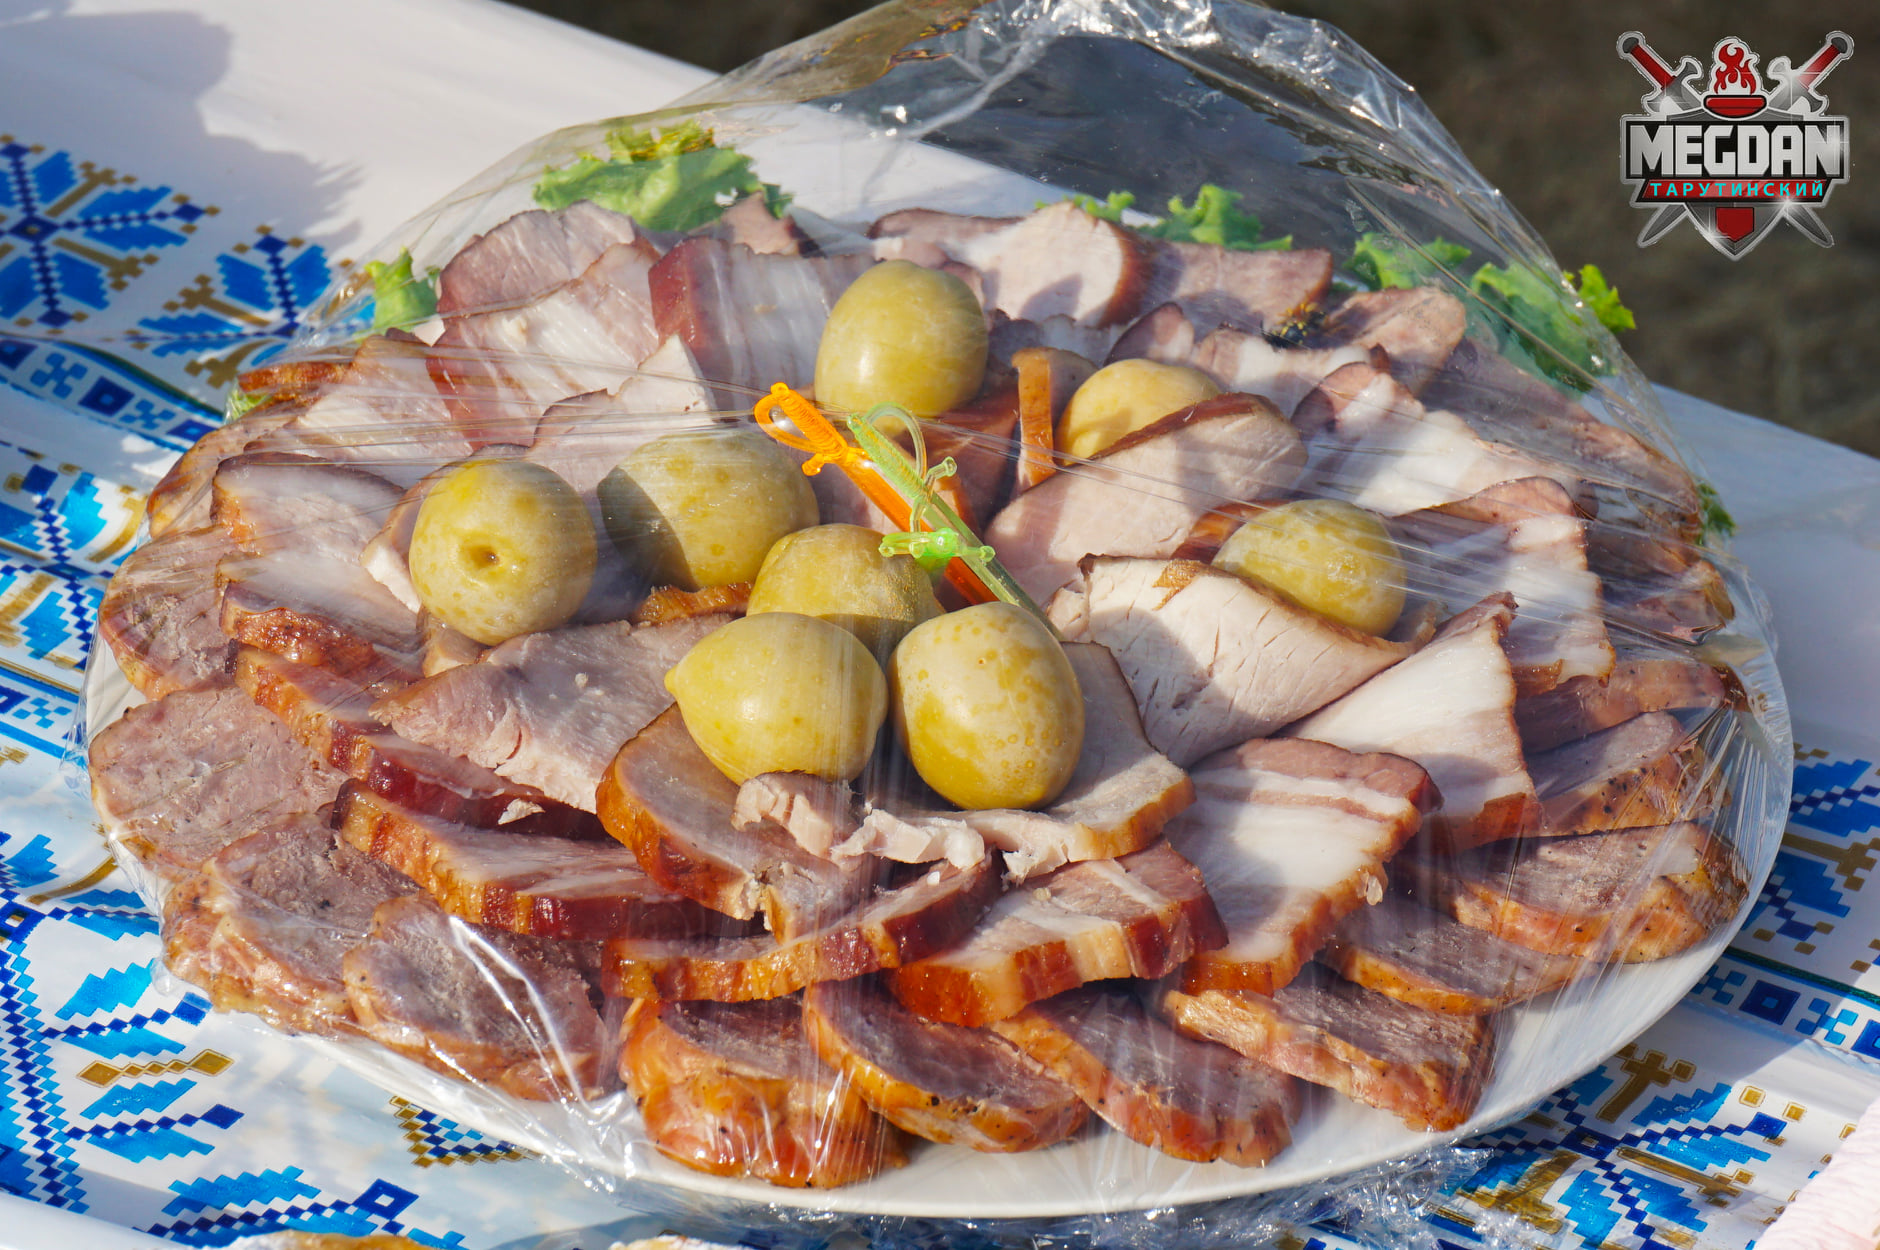 Самый длинный стол с бессарабскими блюдами: в Тарутино установлен национальный рекорд Украины